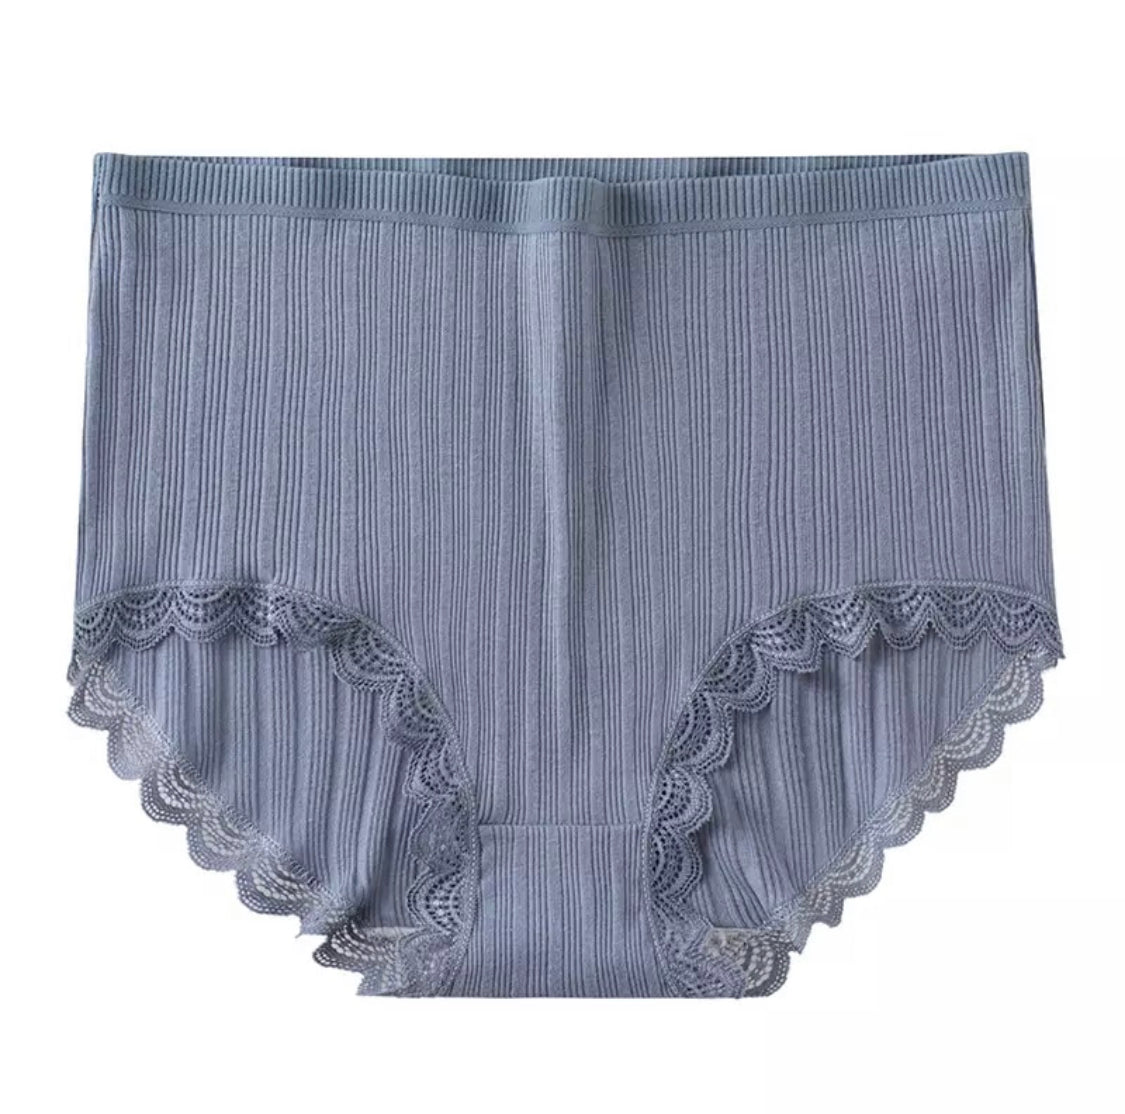 2pcs Cotton Underwear Women Lace Waistband Full Briefs Ladies High Leg  Knickers Ladies Cotton Seamless Underwear